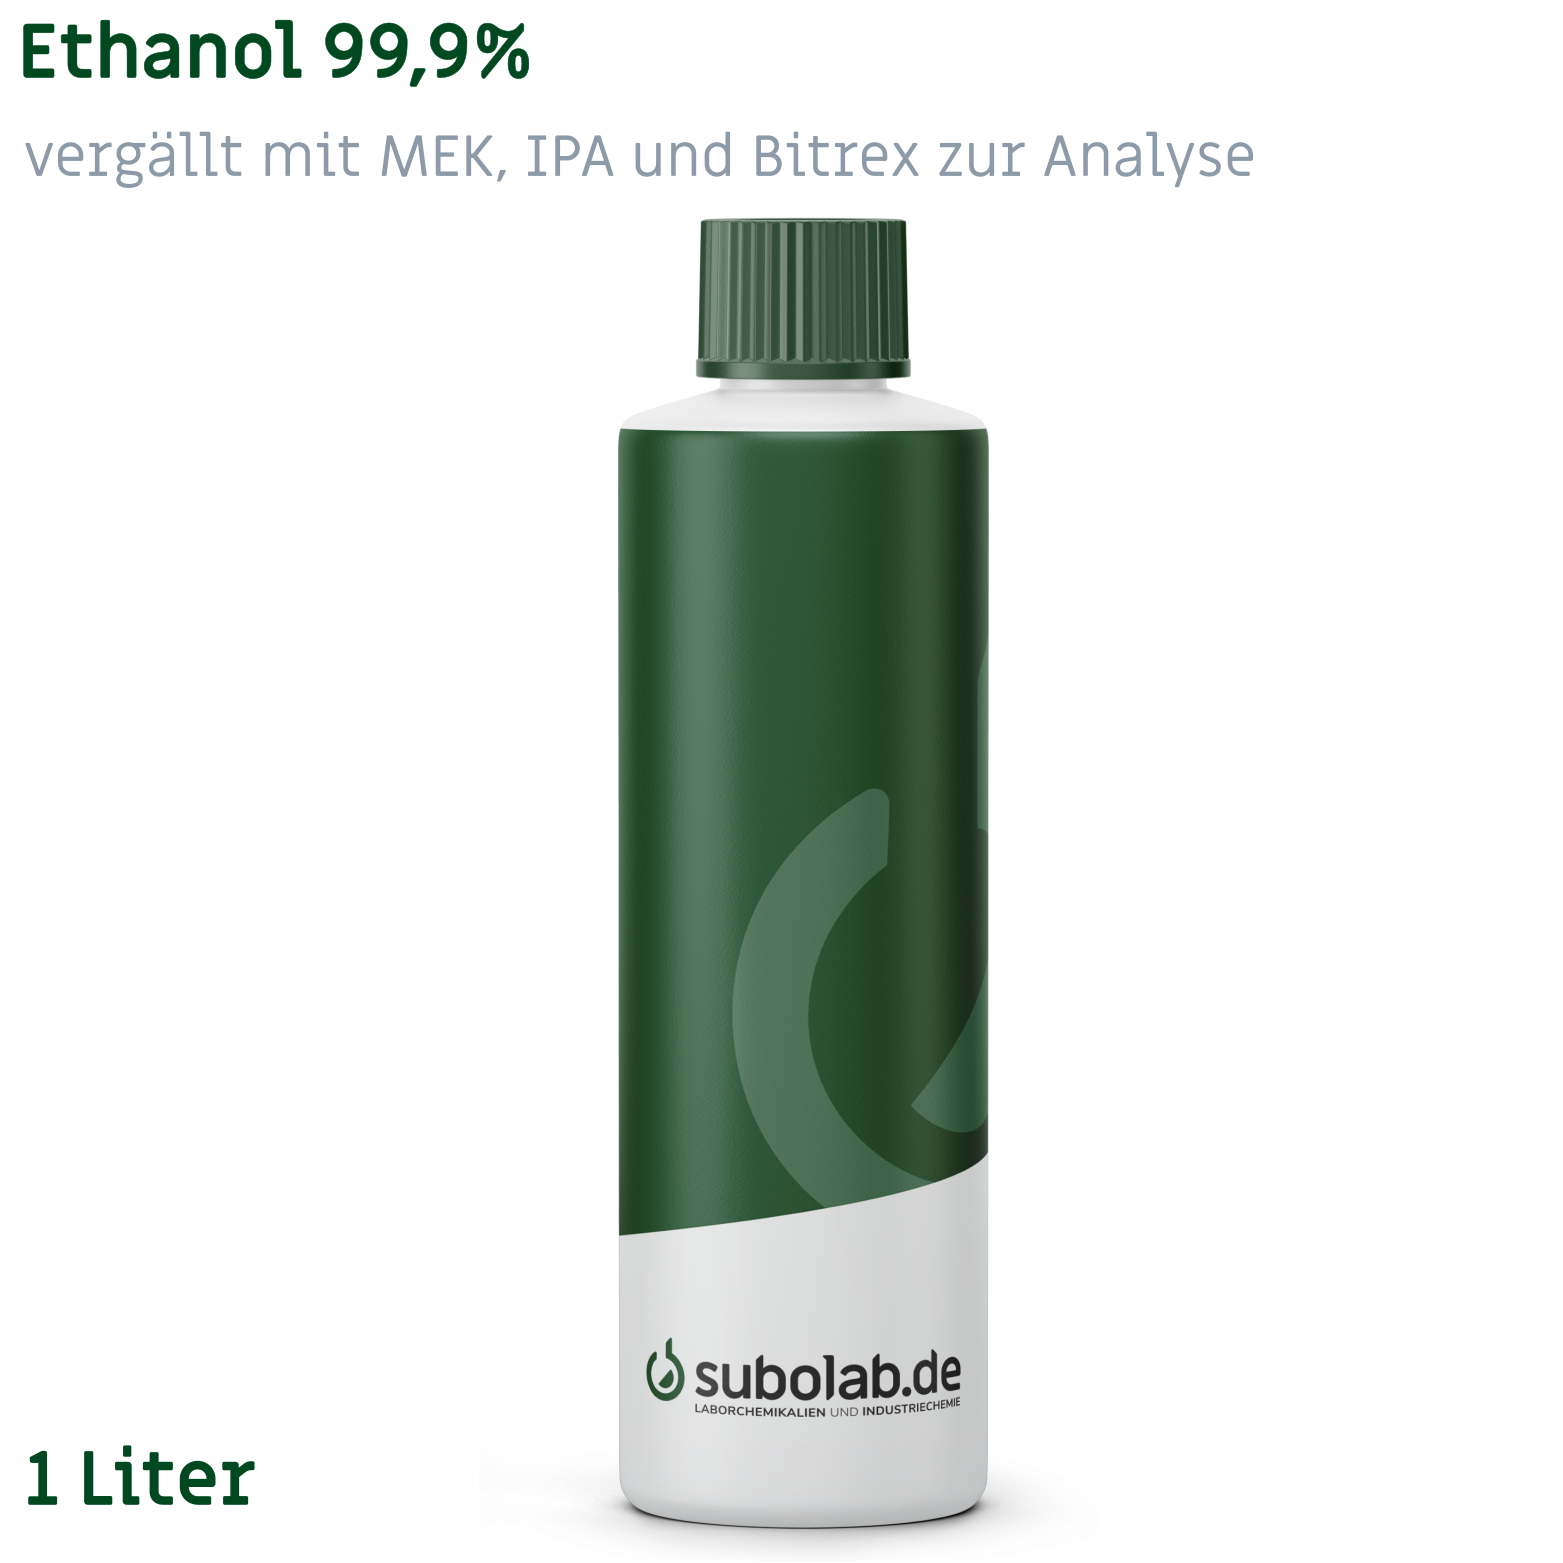 Bild von Ethanol 99,9% vergällt mit MEK, IPA und Bitrex zur Analyse (1 Liter)